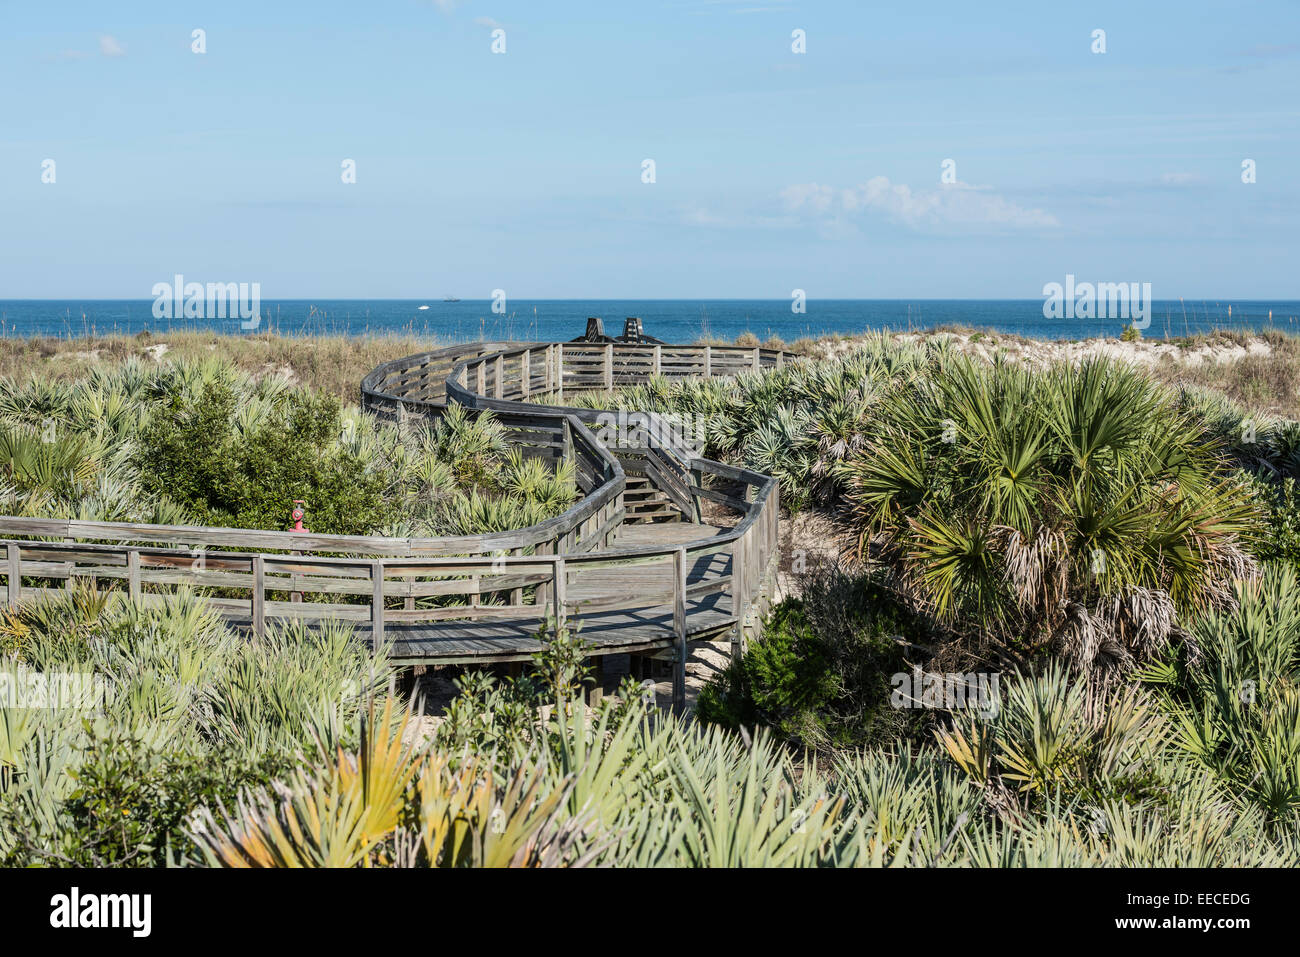 Passerella in legno a serpentina che si snoda attraverso l'habitat costiero di dune di sabbia, ha visto i paletti e le avena di mare con l'oceano sullo sfondo, Daytona Beach. Foto Stock